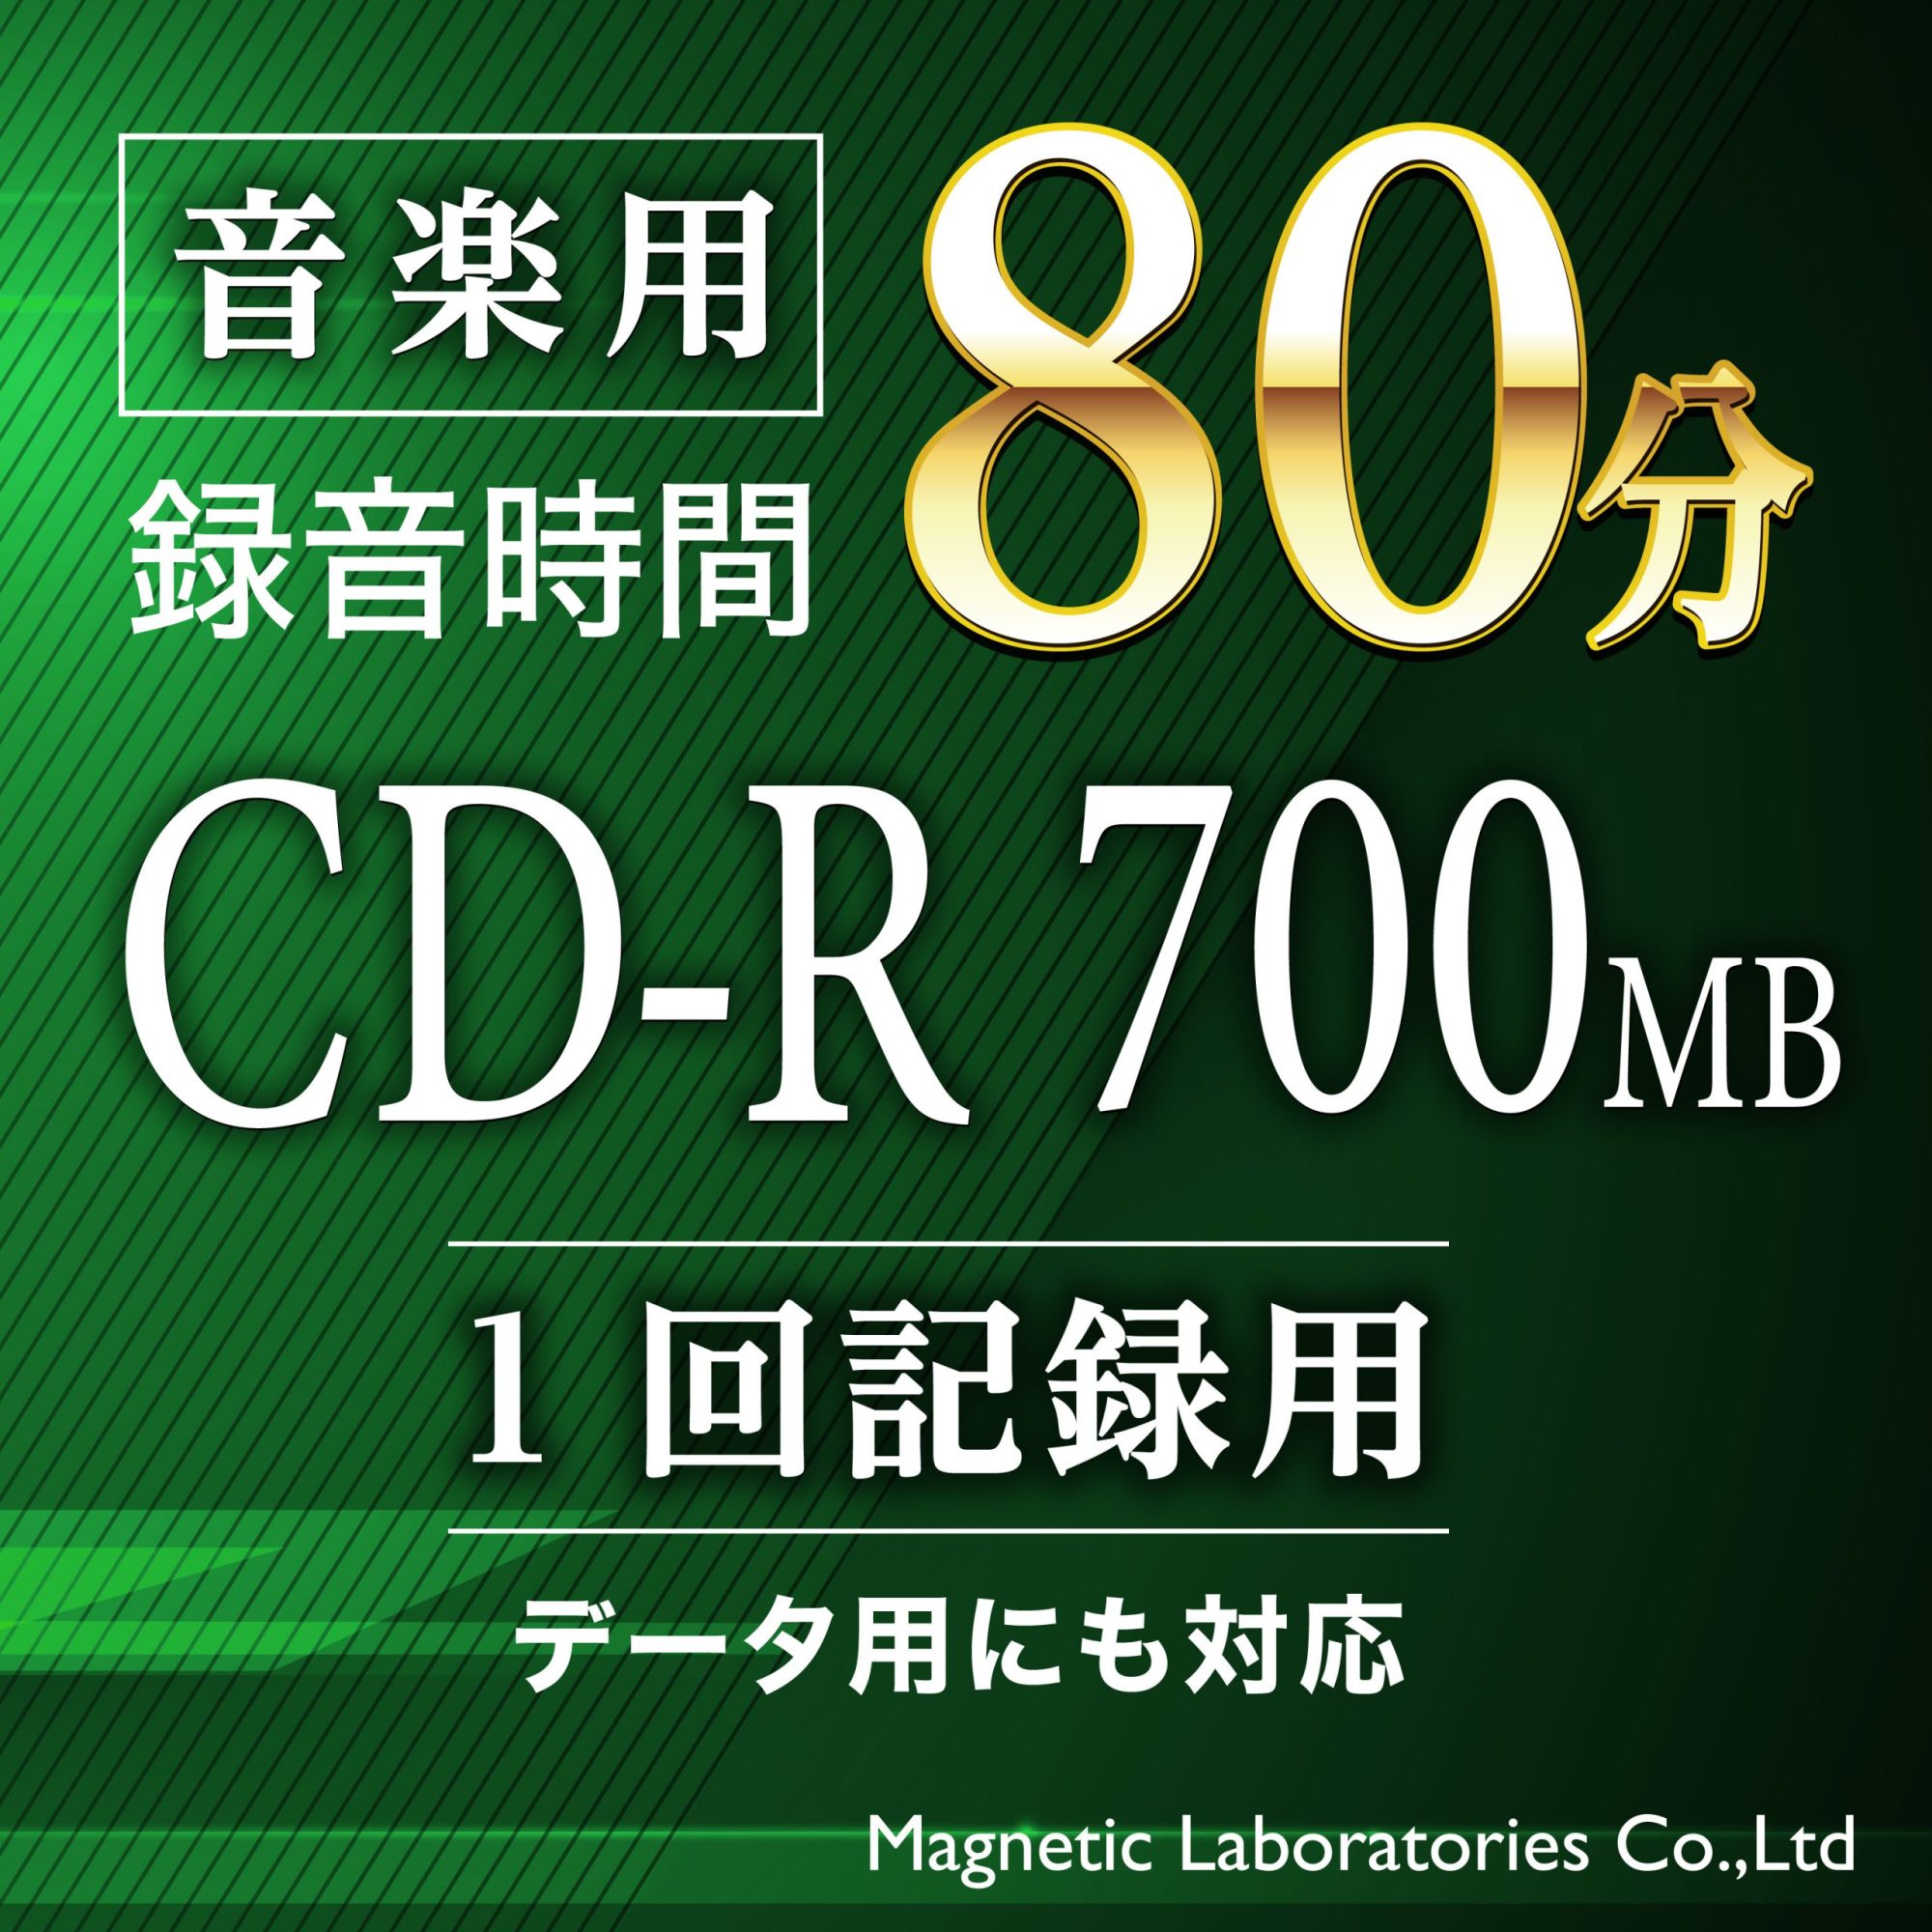 2個以上購入で送料無料 TYコードシリーズHIDISC CD-R データ用 48倍速 700MB 写真画質 光沢 ワイドプリンタブル白  ウォーターシールド 20枚ス データ用メディア